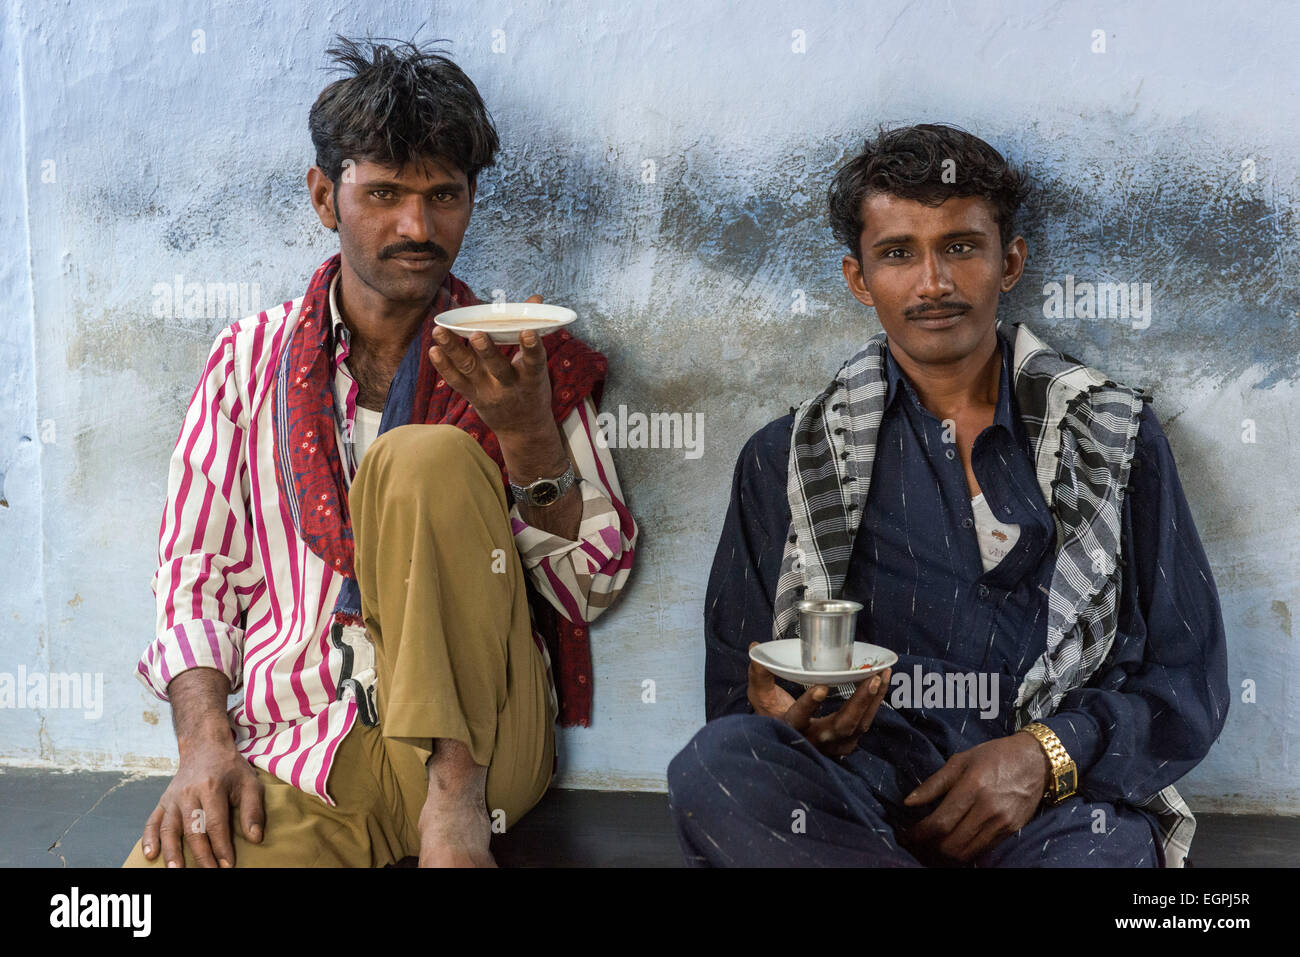 Dans une maison de thé, les hommes boivent chai masala directement hors du porte-gobelet. C'est la tradition dans cette région de l'Inde. Banque D'Images